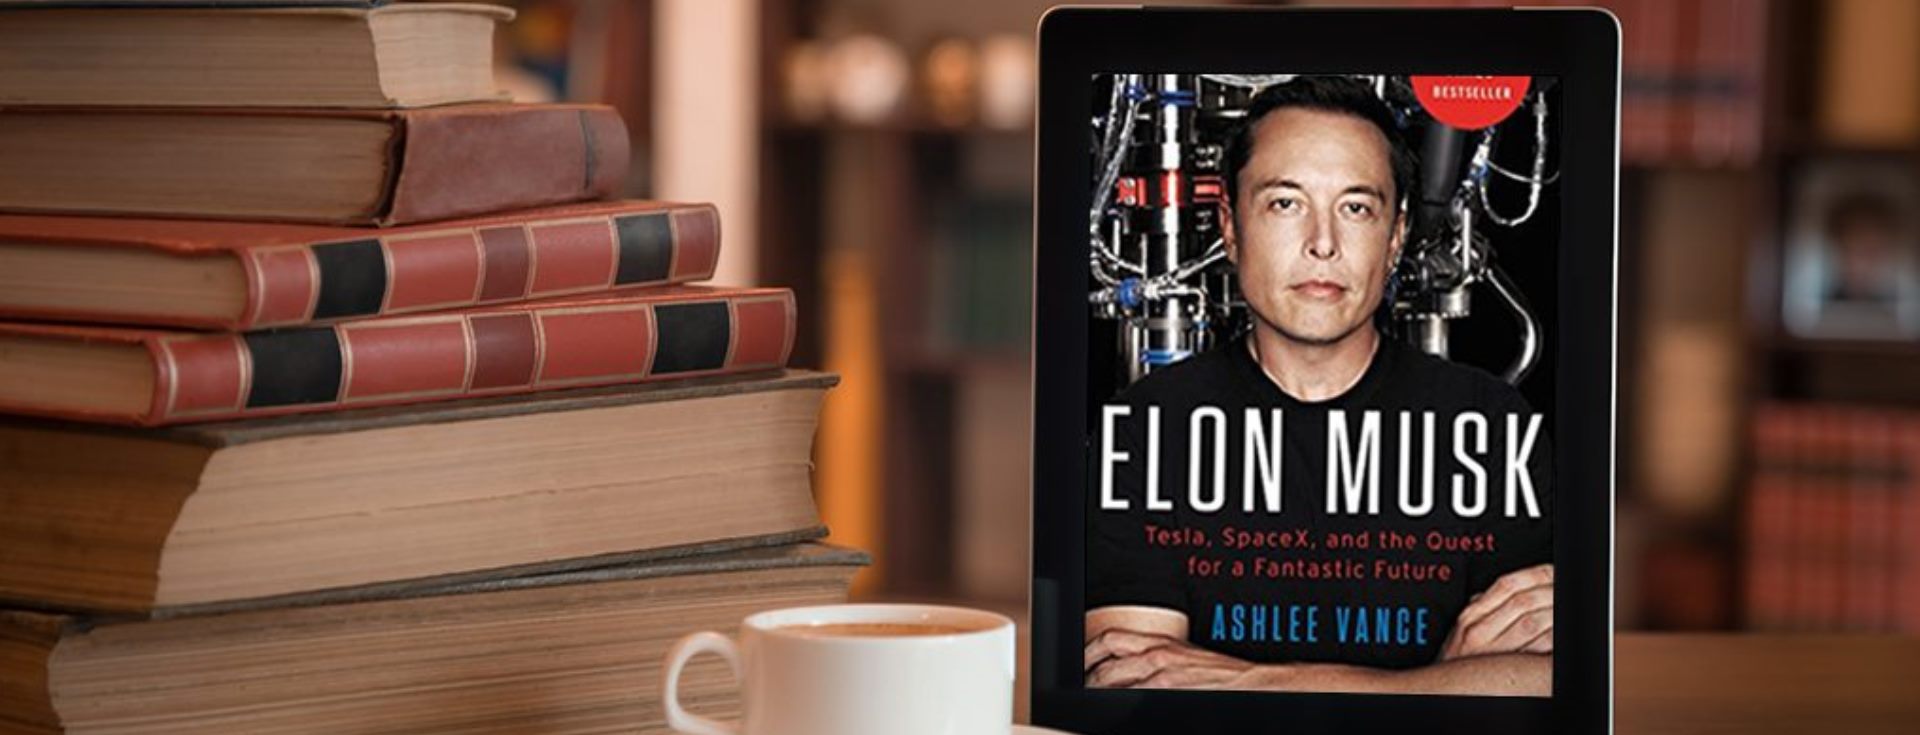 Elon Musk Daha Zeki Olmak İçin Bu Kitapları Öneriyor